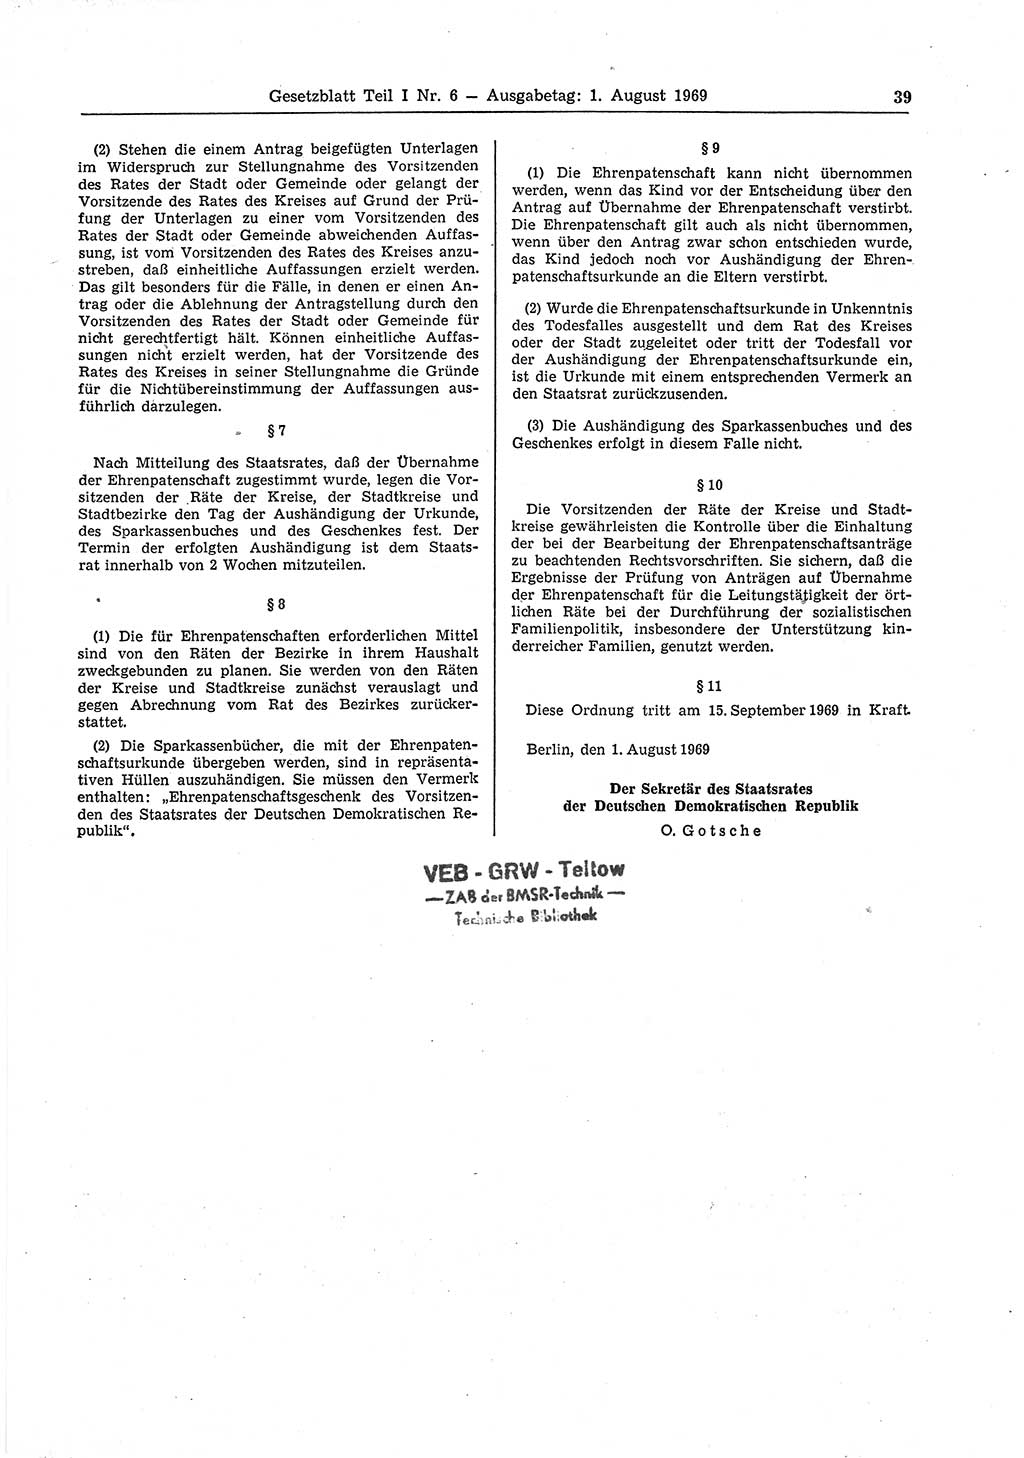 Gesetzblatt (GBl.) der Deutschen Demokratischen Republik (DDR) Teil Ⅰ 1969, Seite 39 (GBl. DDR Ⅰ 1969, S. 39)